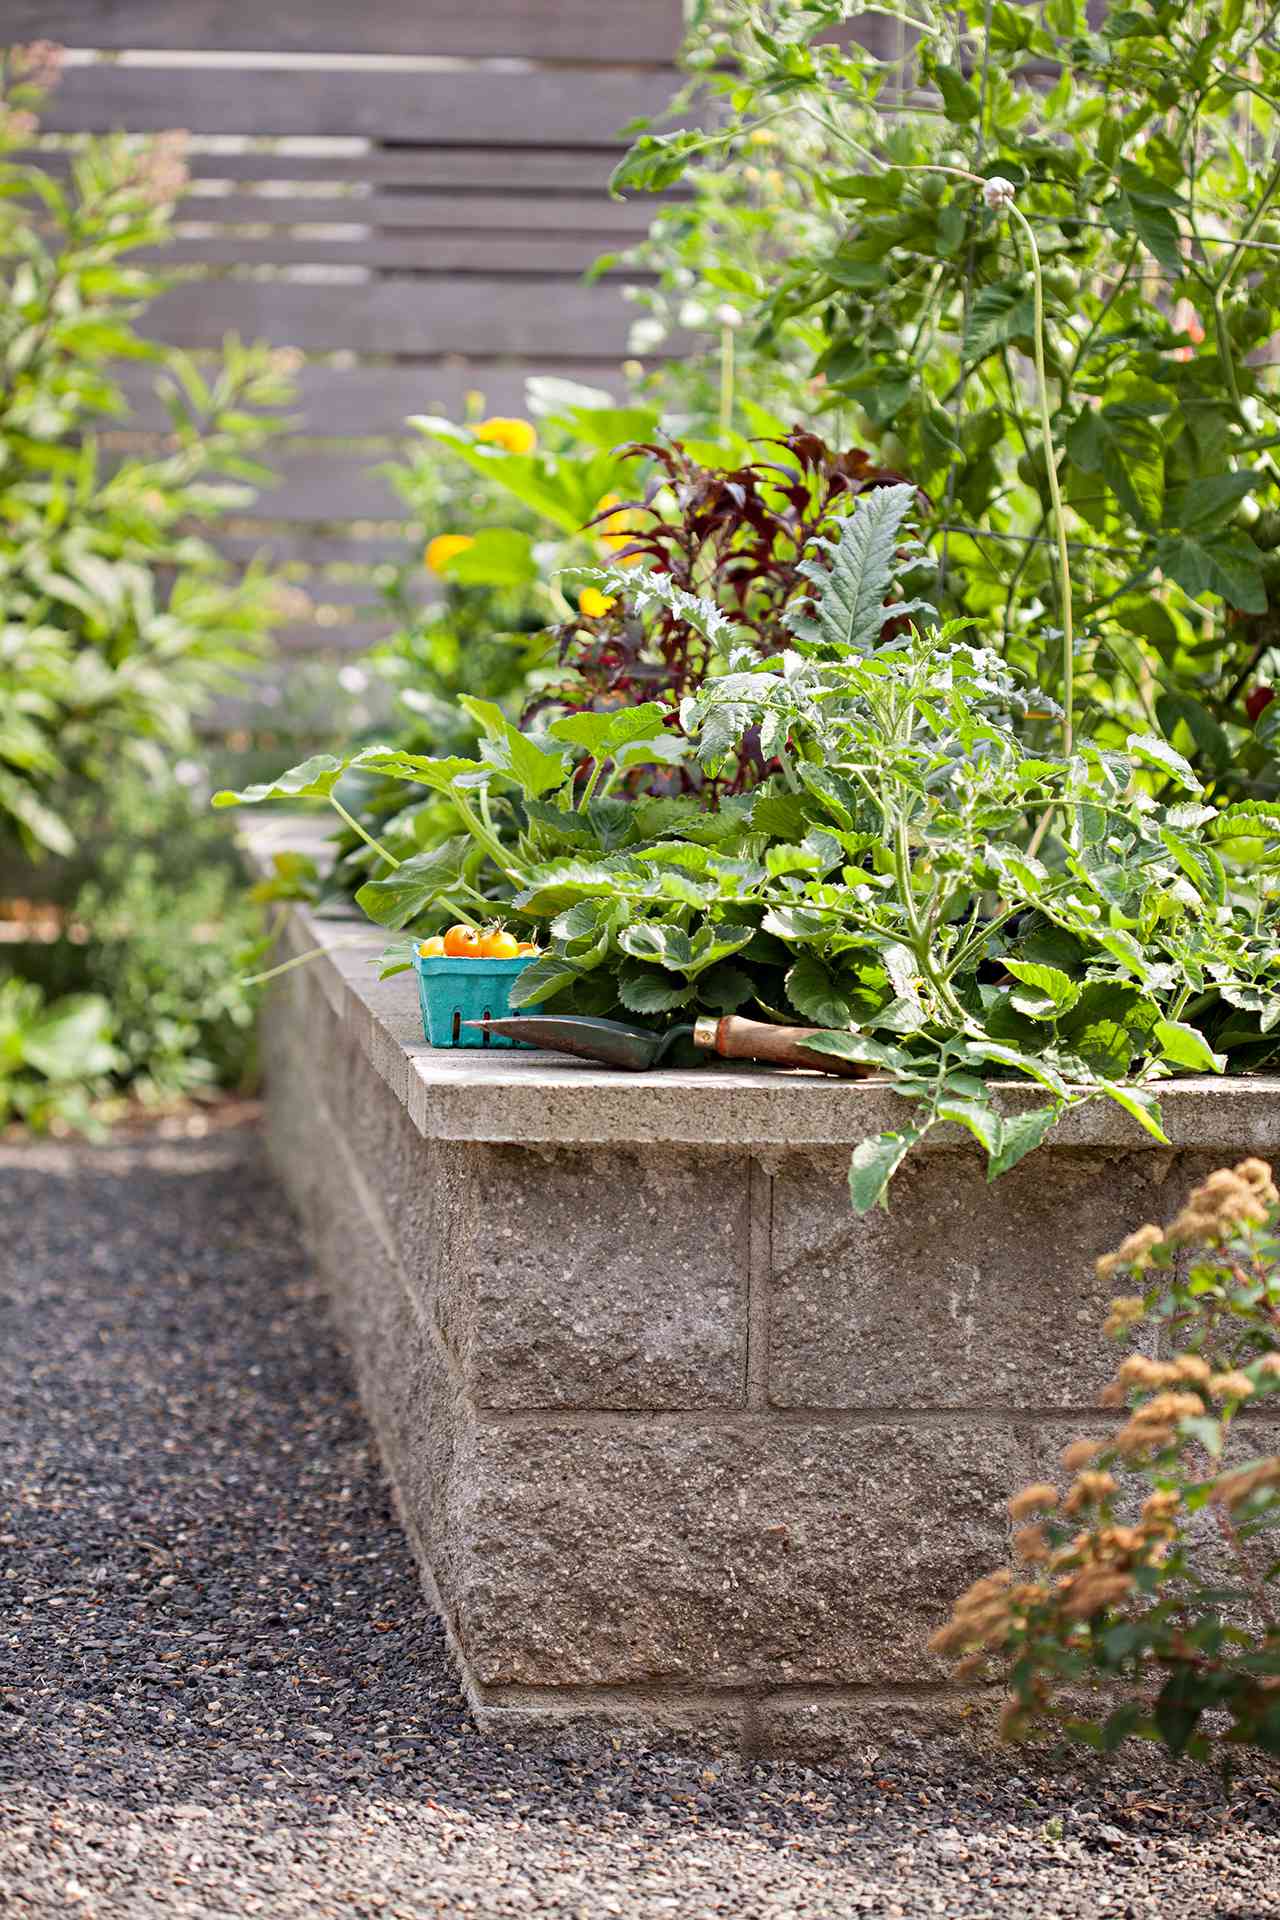 the basics of organic gardening in raised garden beds | better homes